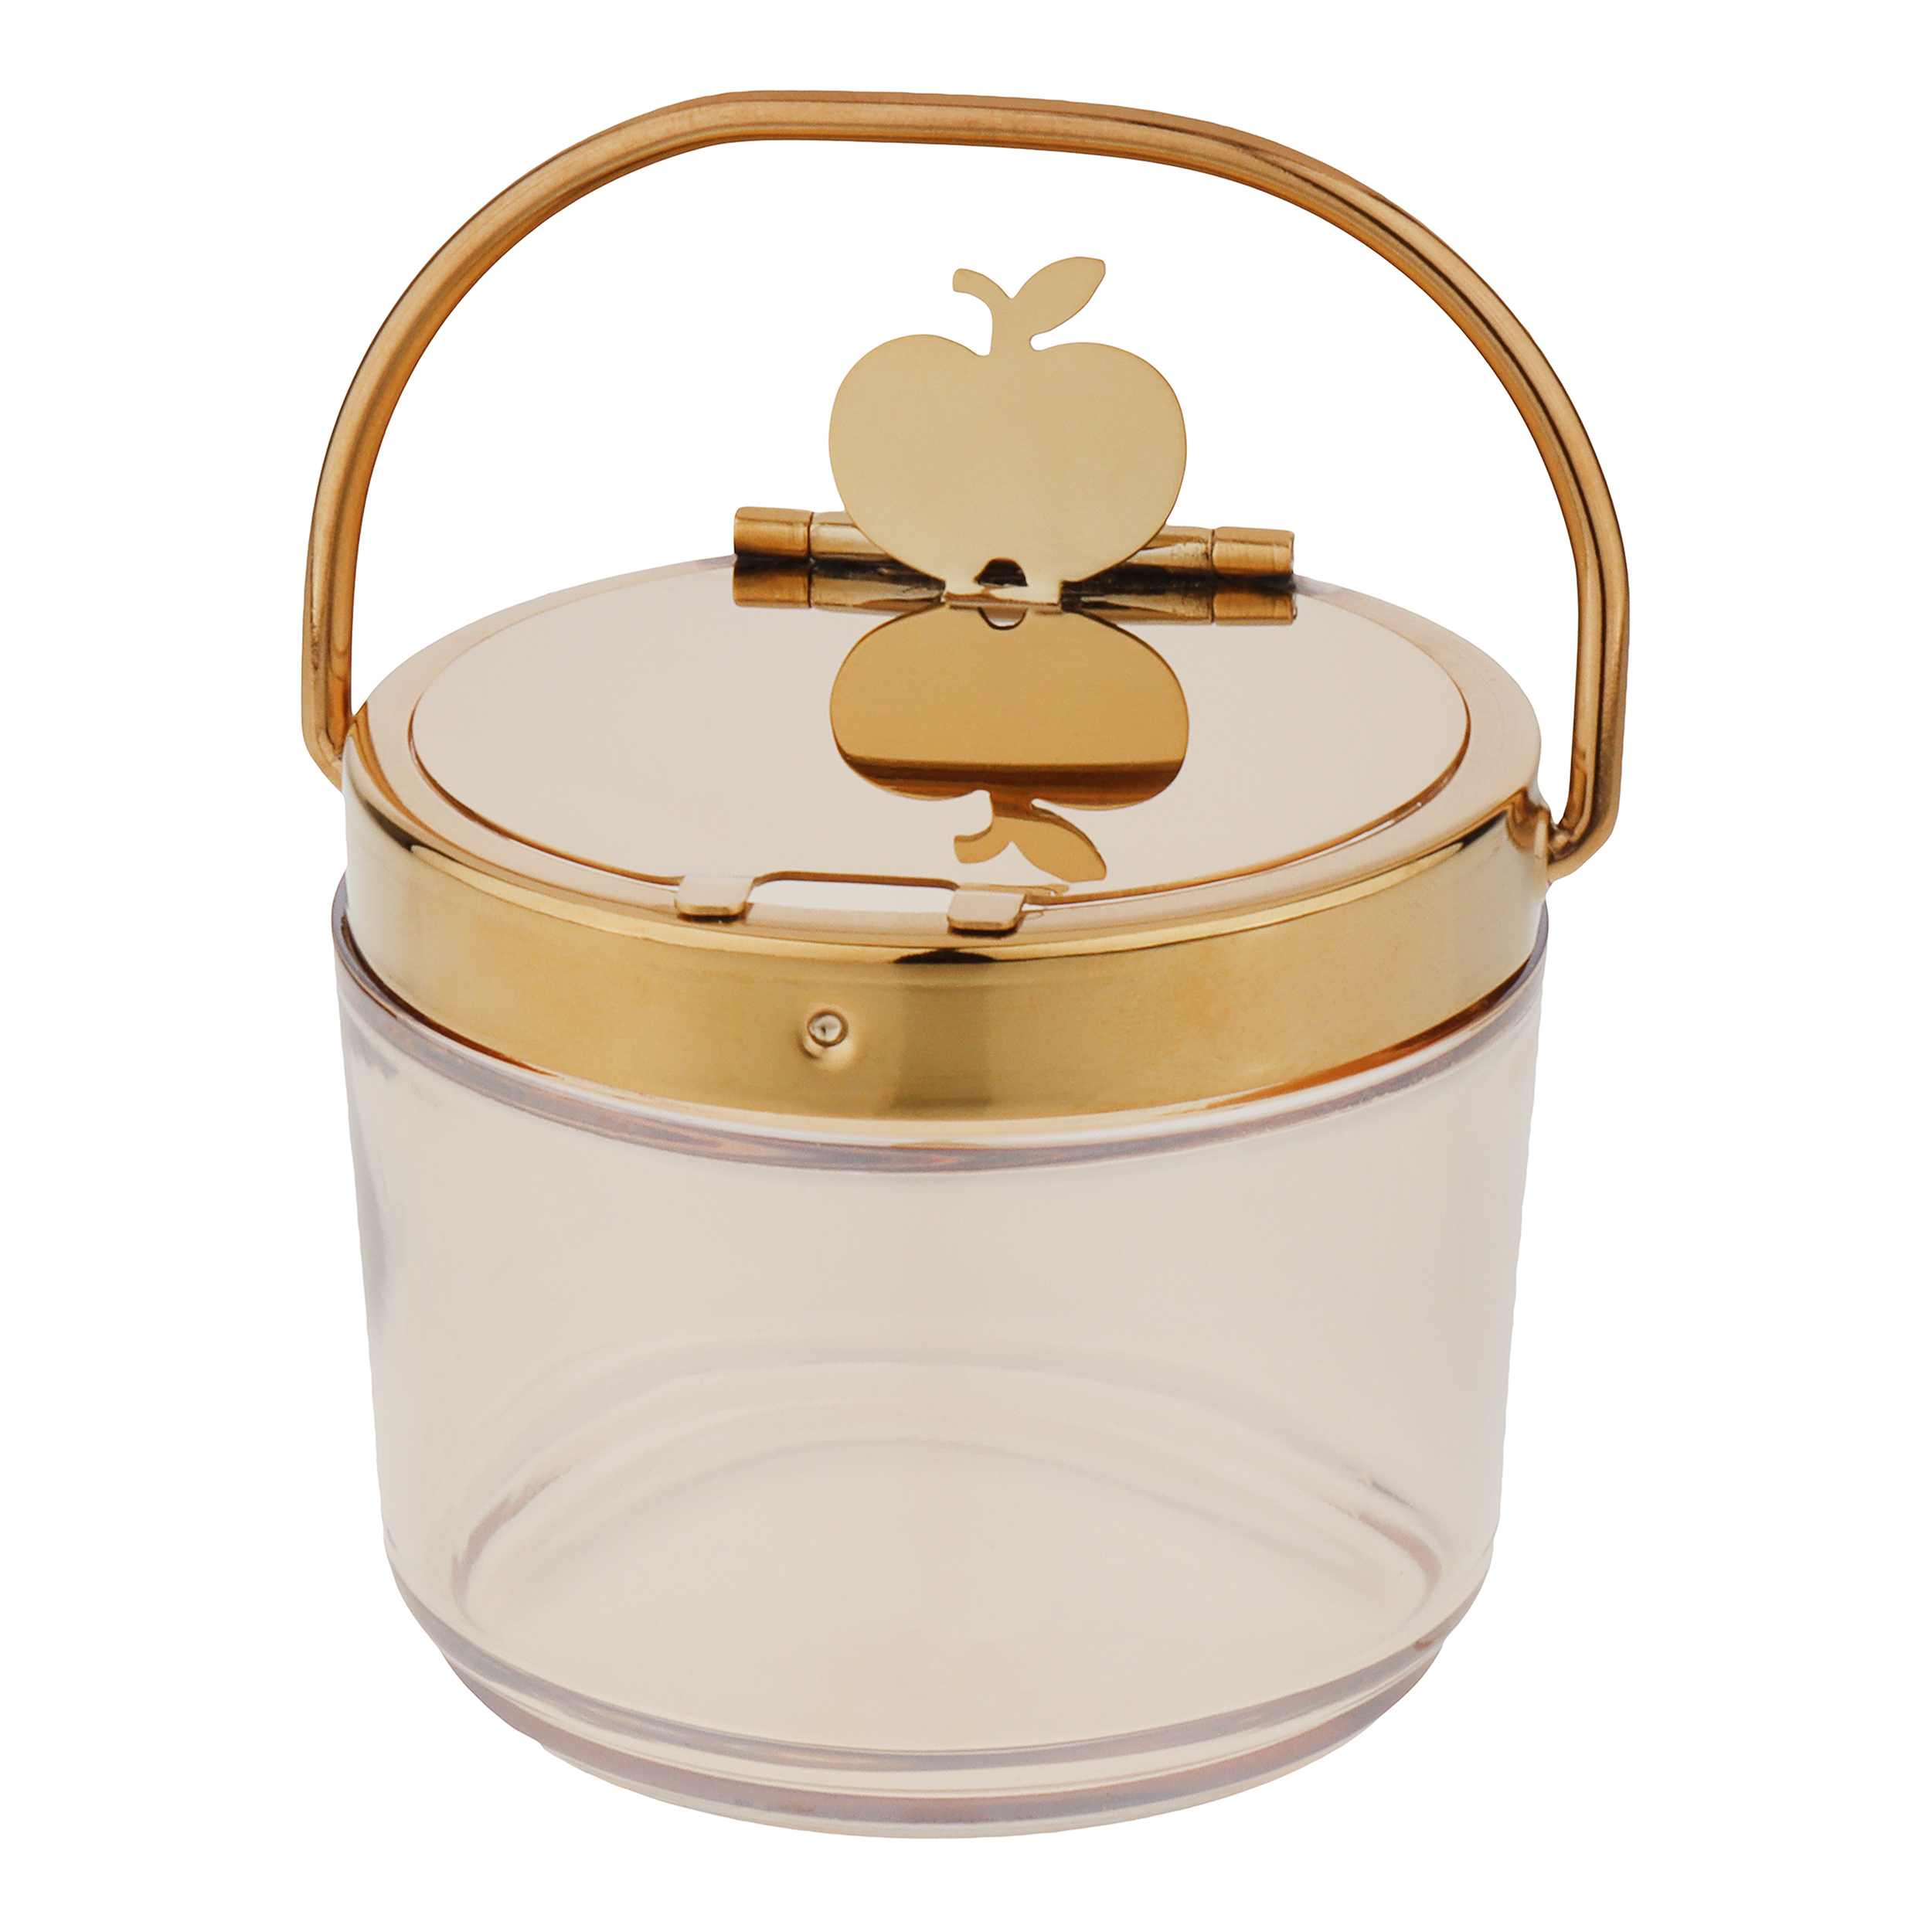 ظرف مربا و عسل مدل شیشه ای با طرح سیب - بدون بازو